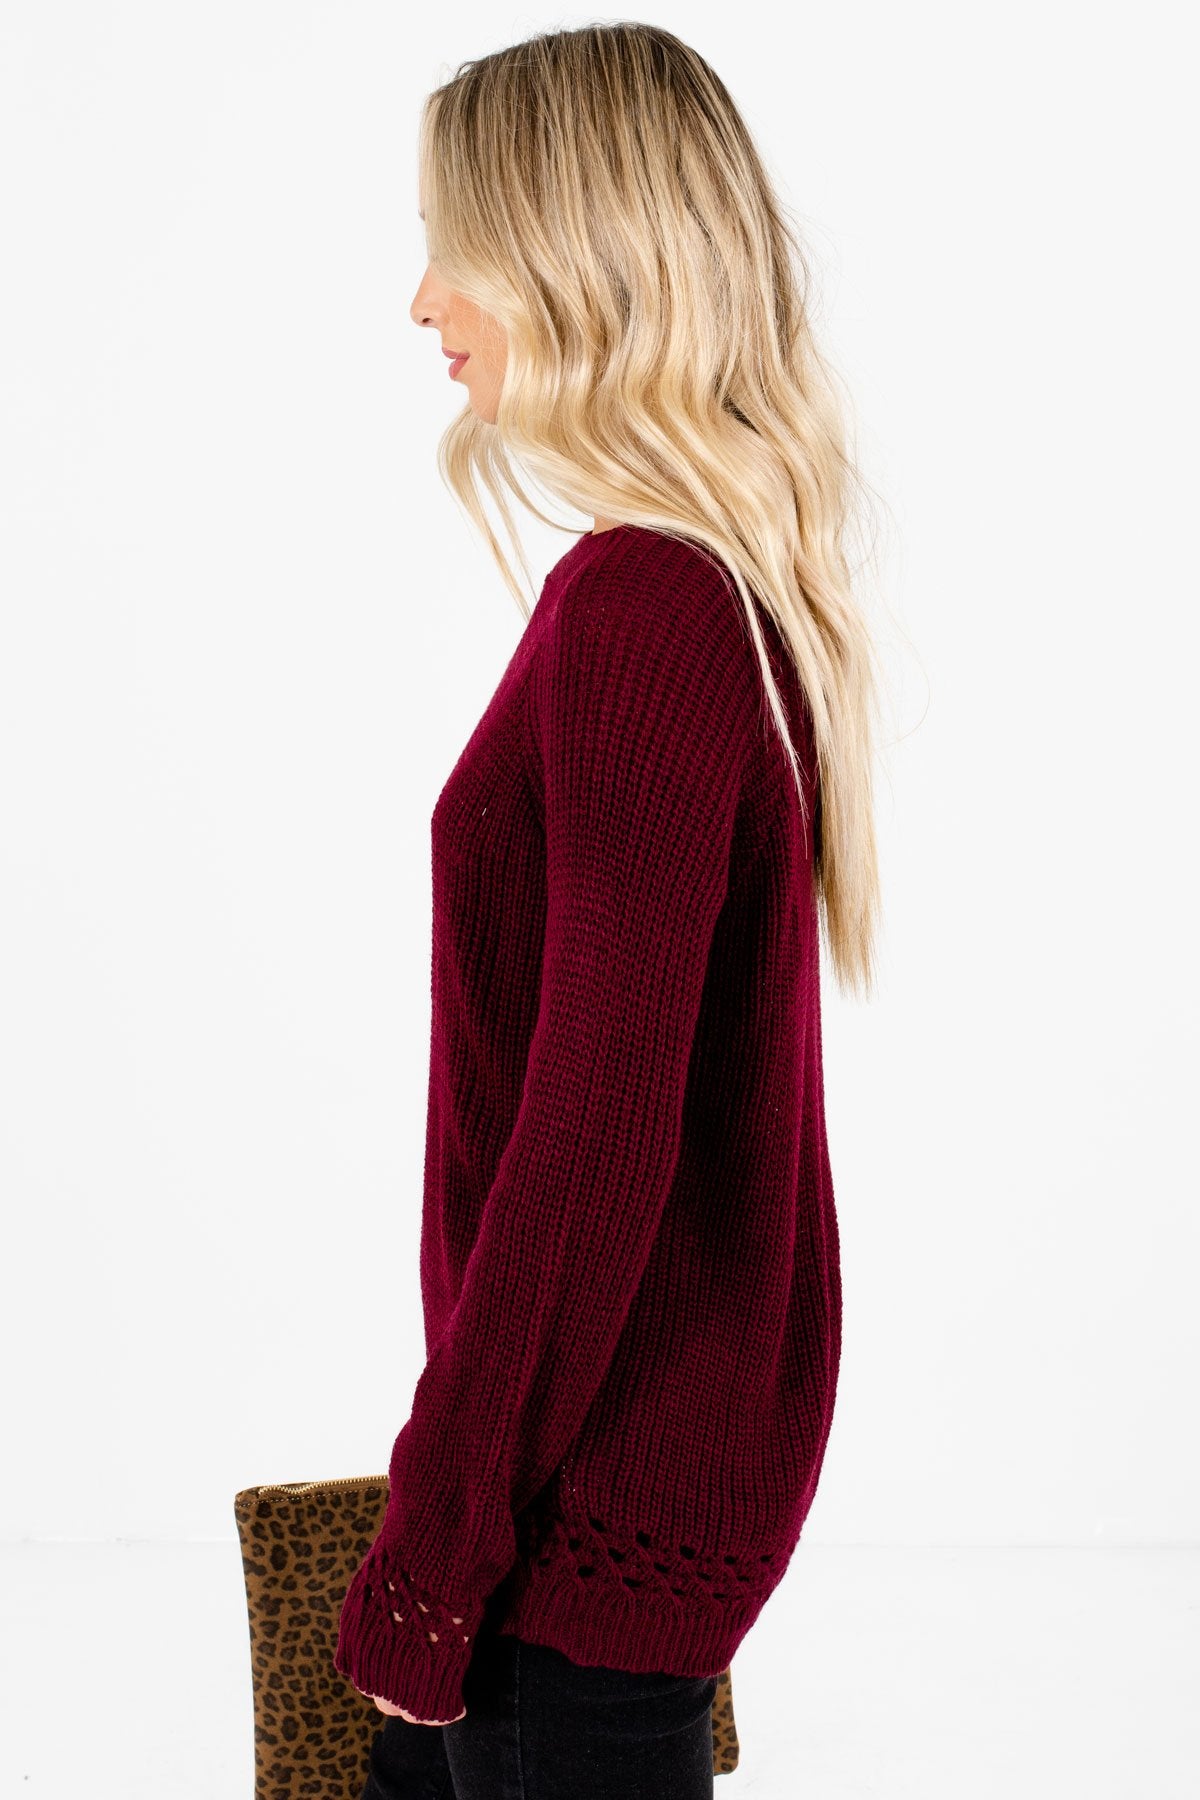 Burgundy Round Neckline Boutique Sweaters for Women